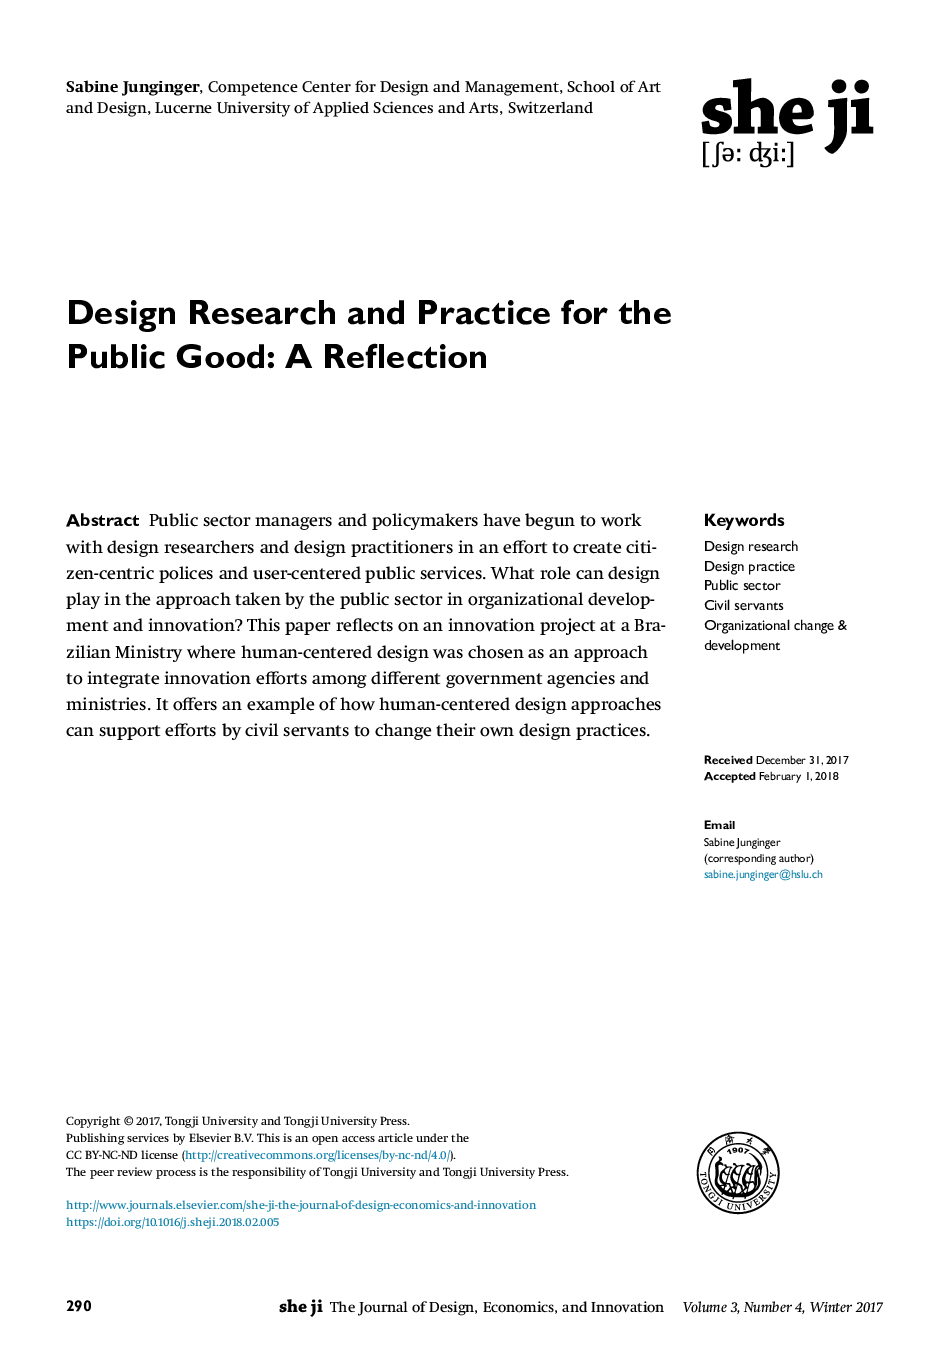 تحقیق و تمرین طراحی برای خوب عمومی: بازتاب 